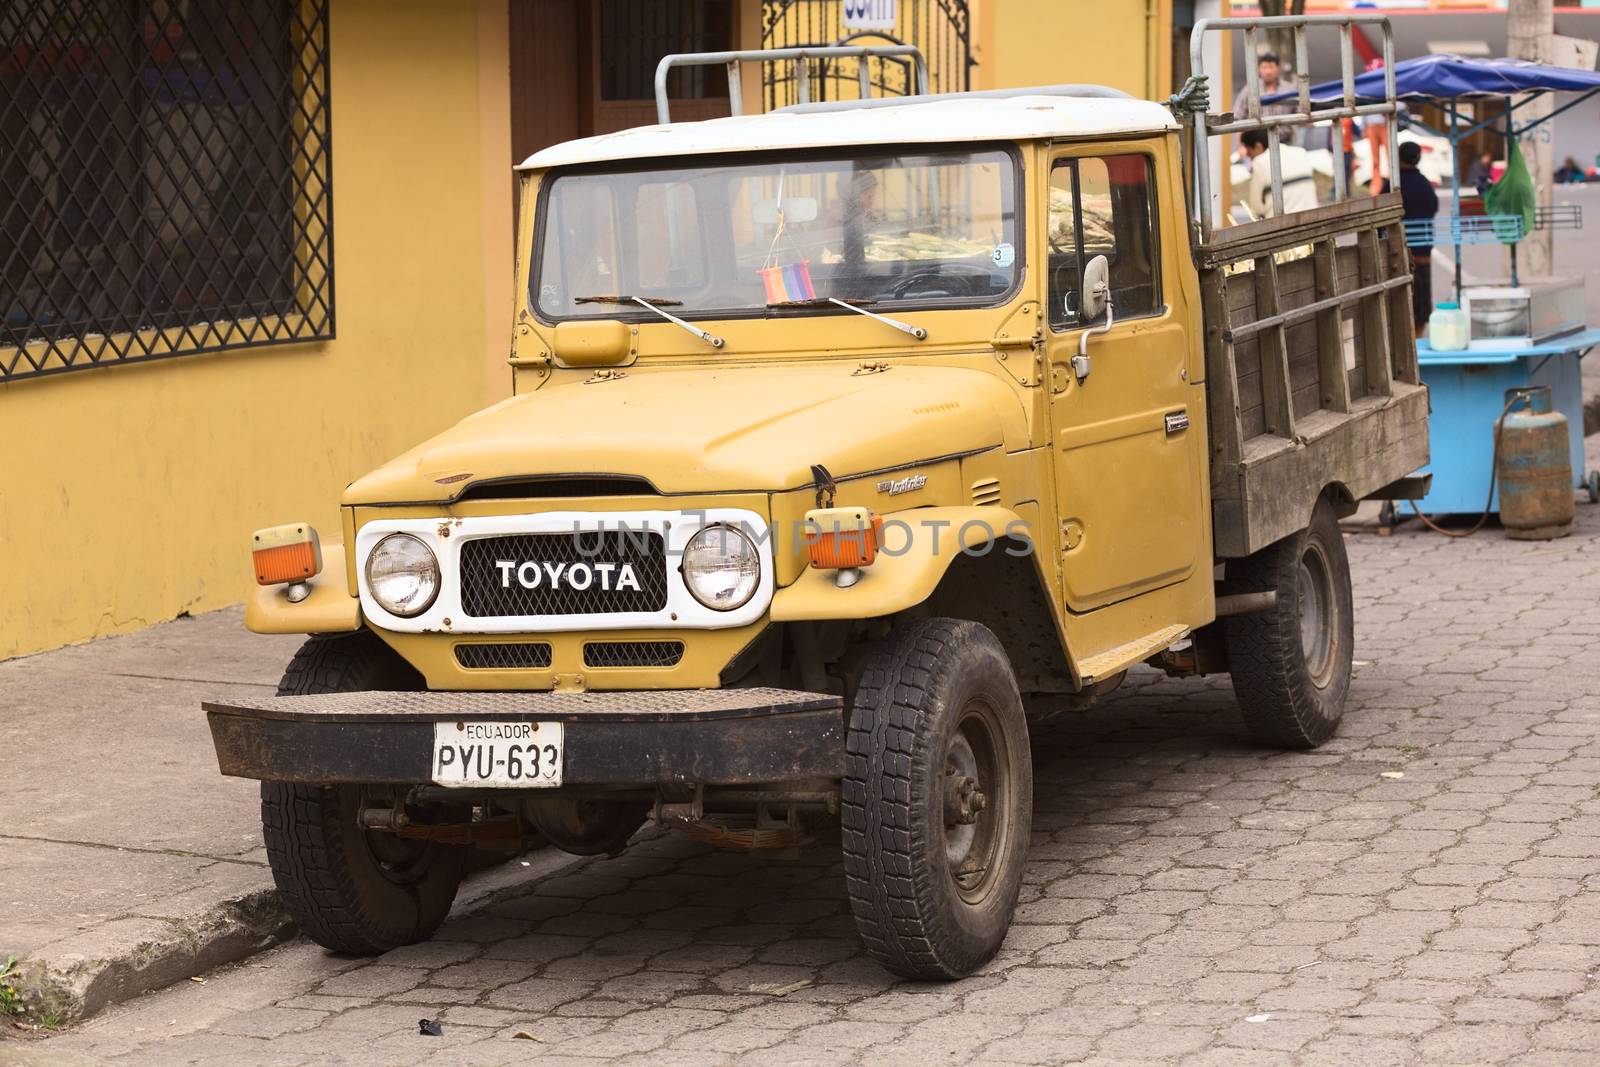 Toyota Land Cruiser in Banos, Ecuador by sven